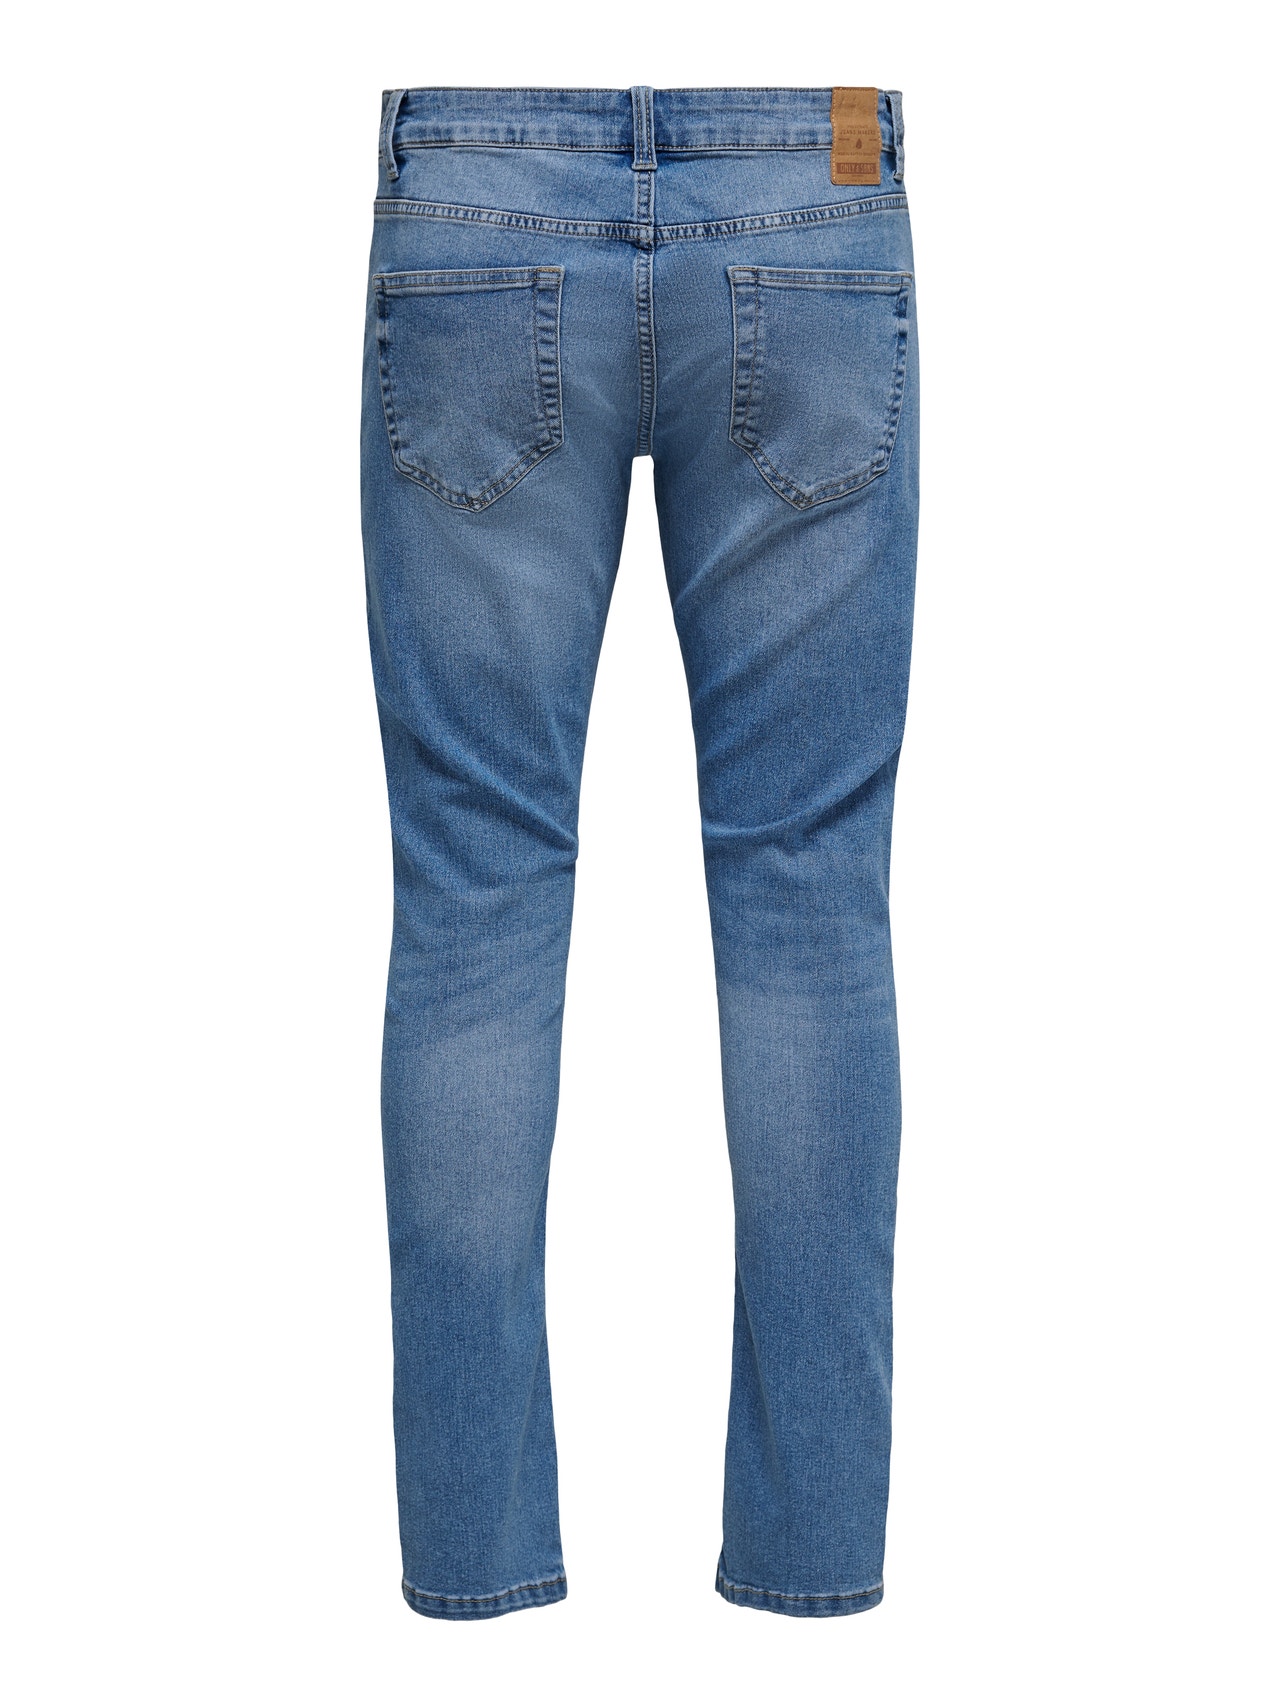 ONLY & SONS Slim Fit Regular rise Jeans -Blue Denim - 22015146